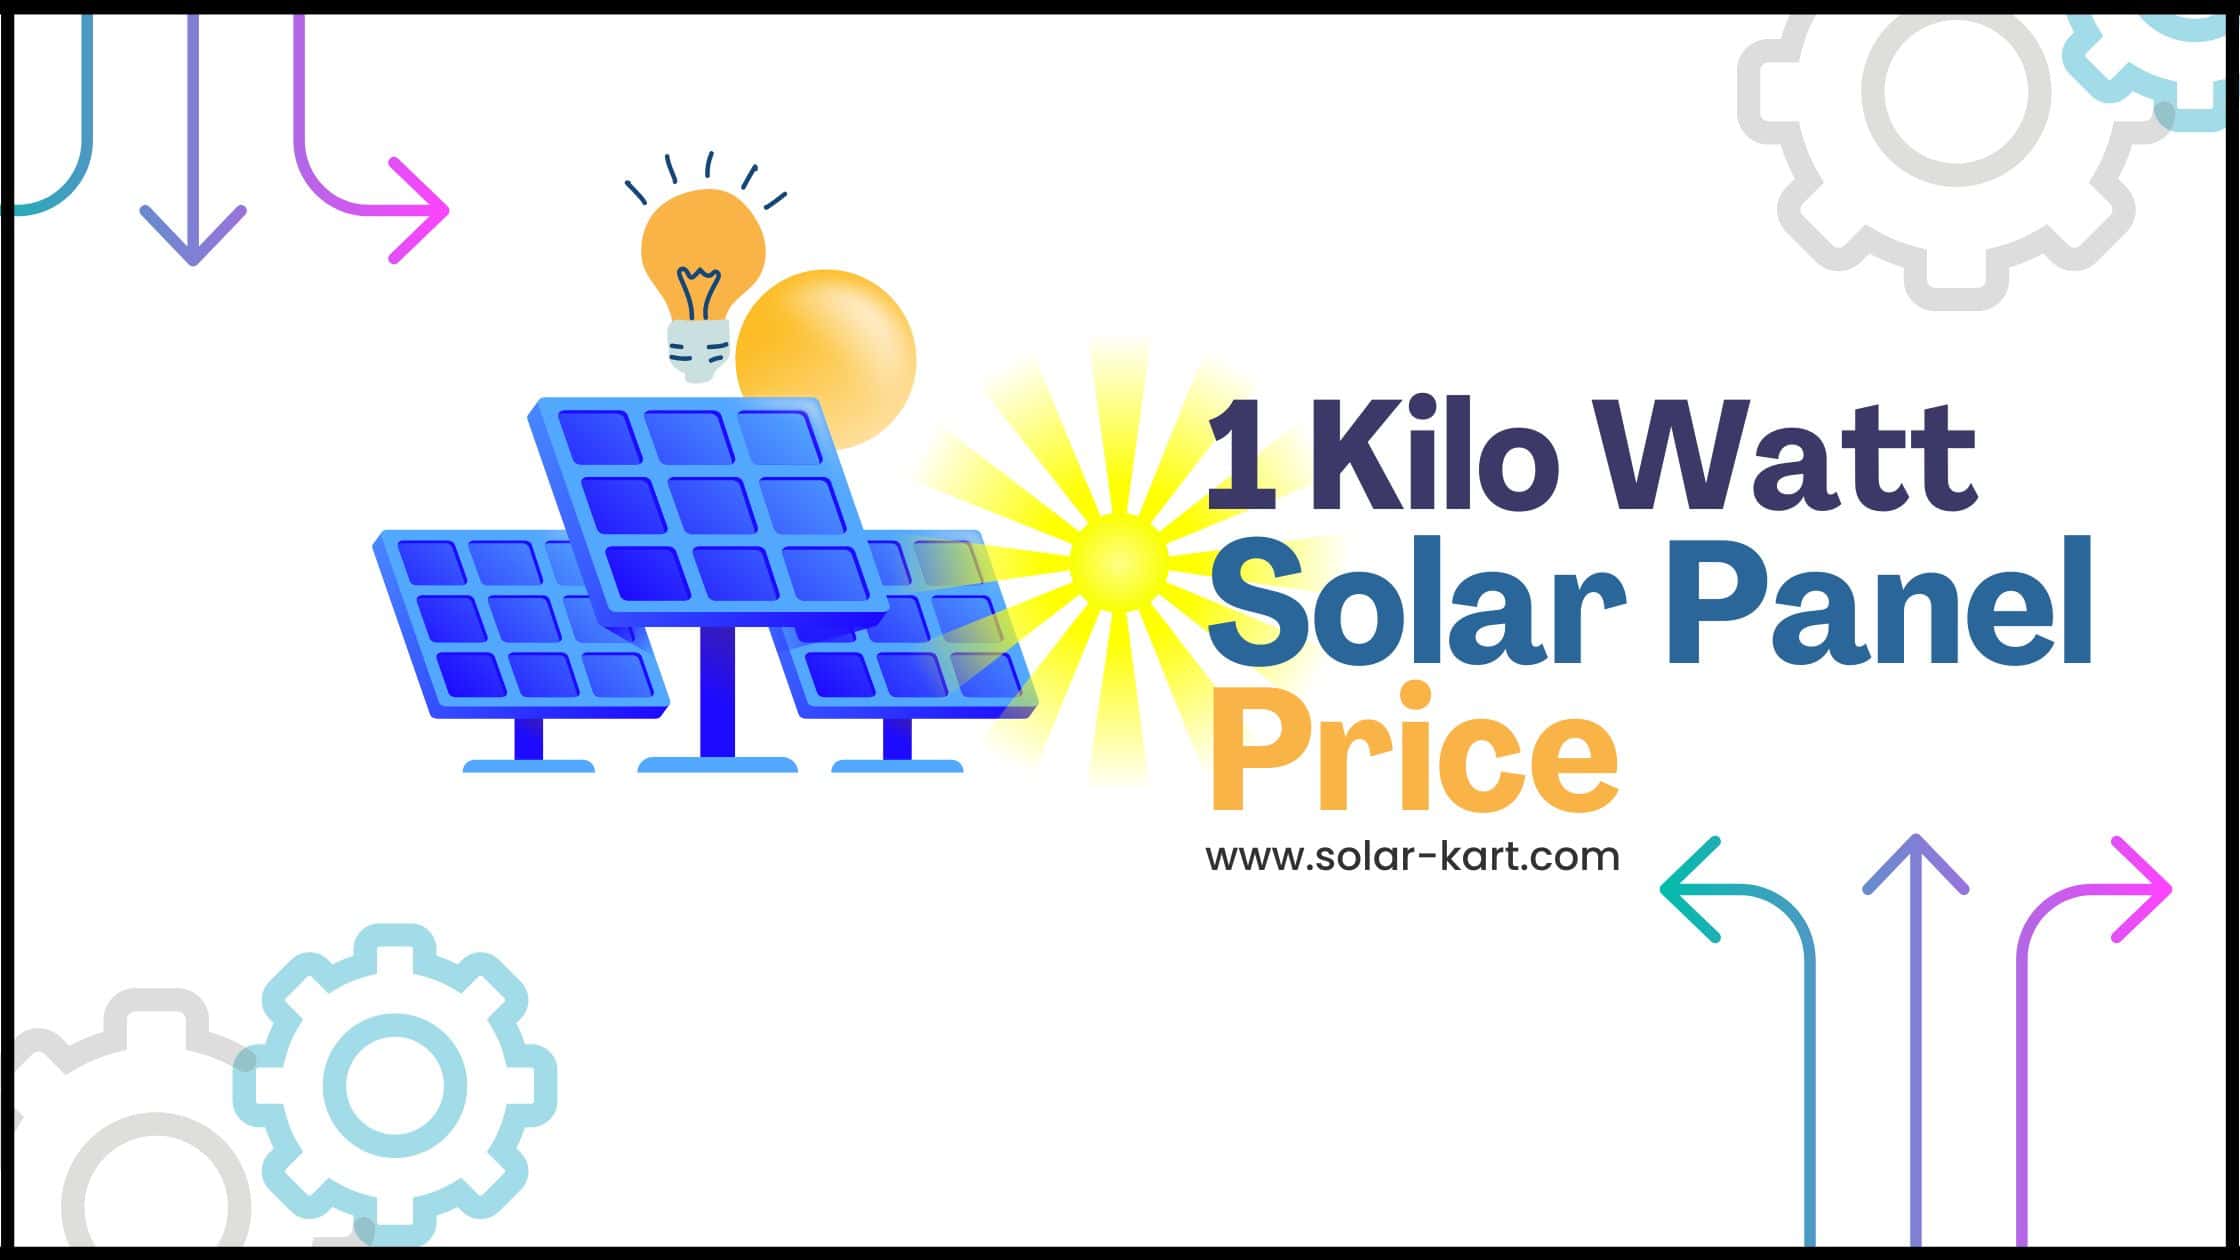 1 Kilo Watt Solar Panel Price